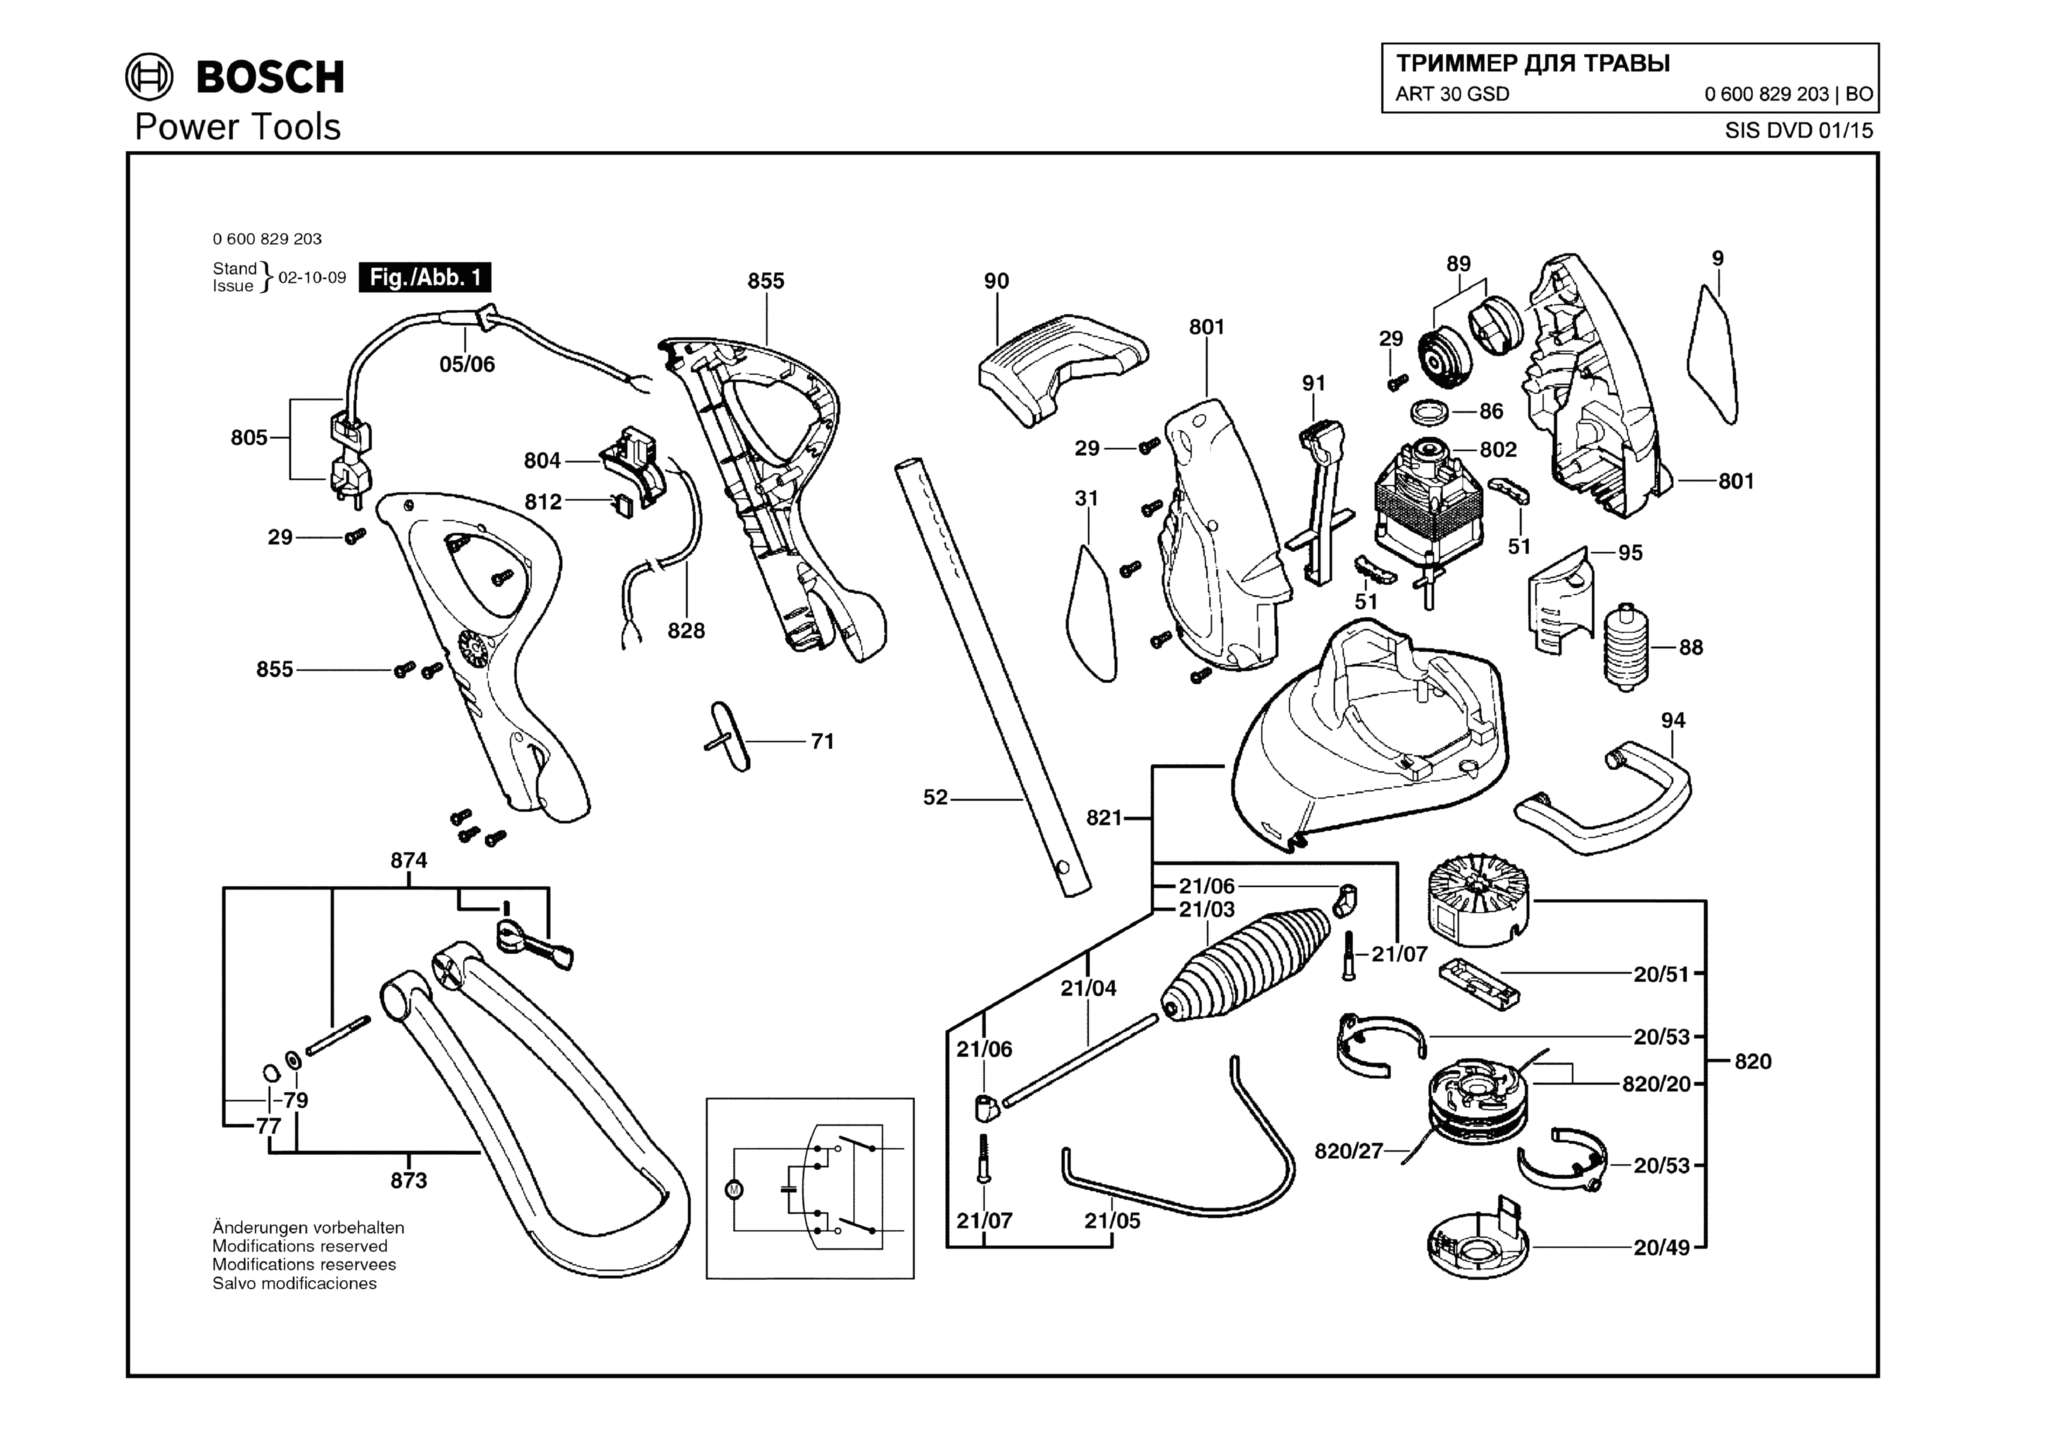 Запчасти, схема и деталировка Bosch ART 30 GSD (ТИП 0600829203)